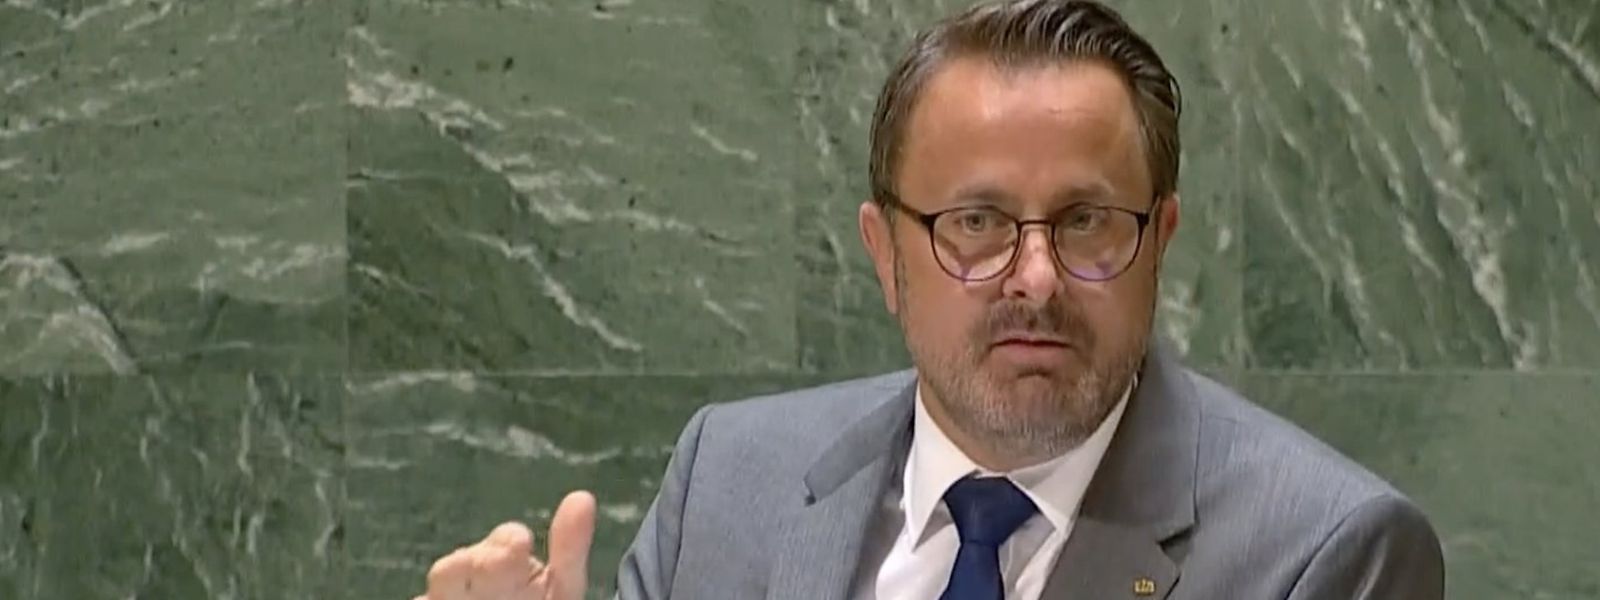 Luxemburg ist bereit, die Bemühungen zur Bekämpfung der Corona-Pandemie fortzusetzen, so Premier Xavier Bettel vor der UNO.